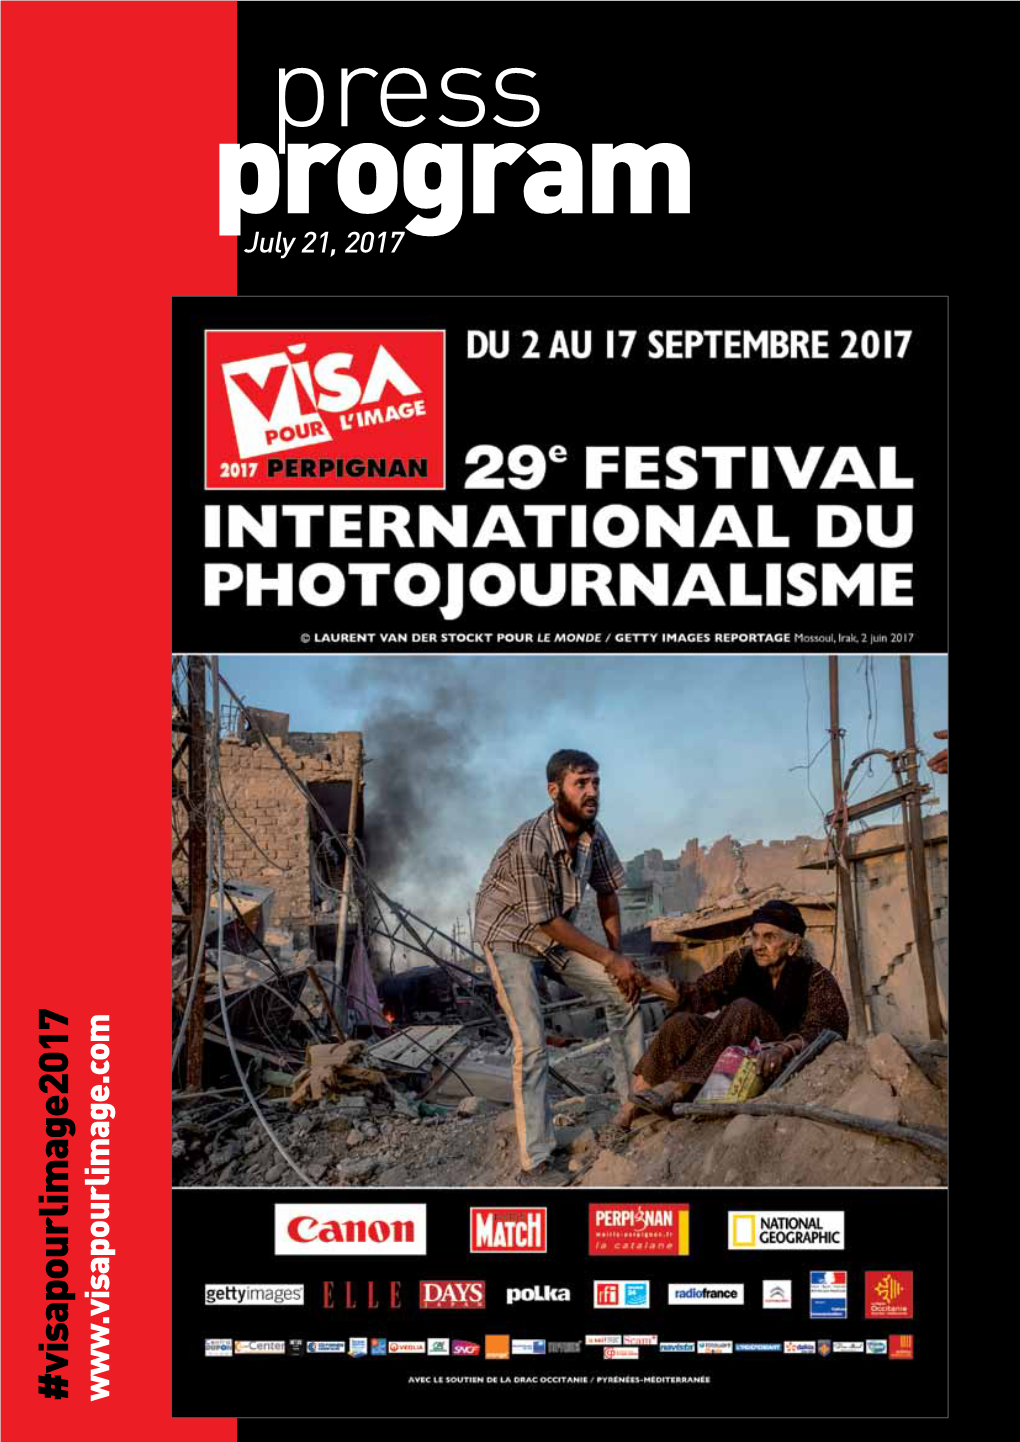 Press Program July 21, 2017 #Visapourlimage2017 Exhibitions